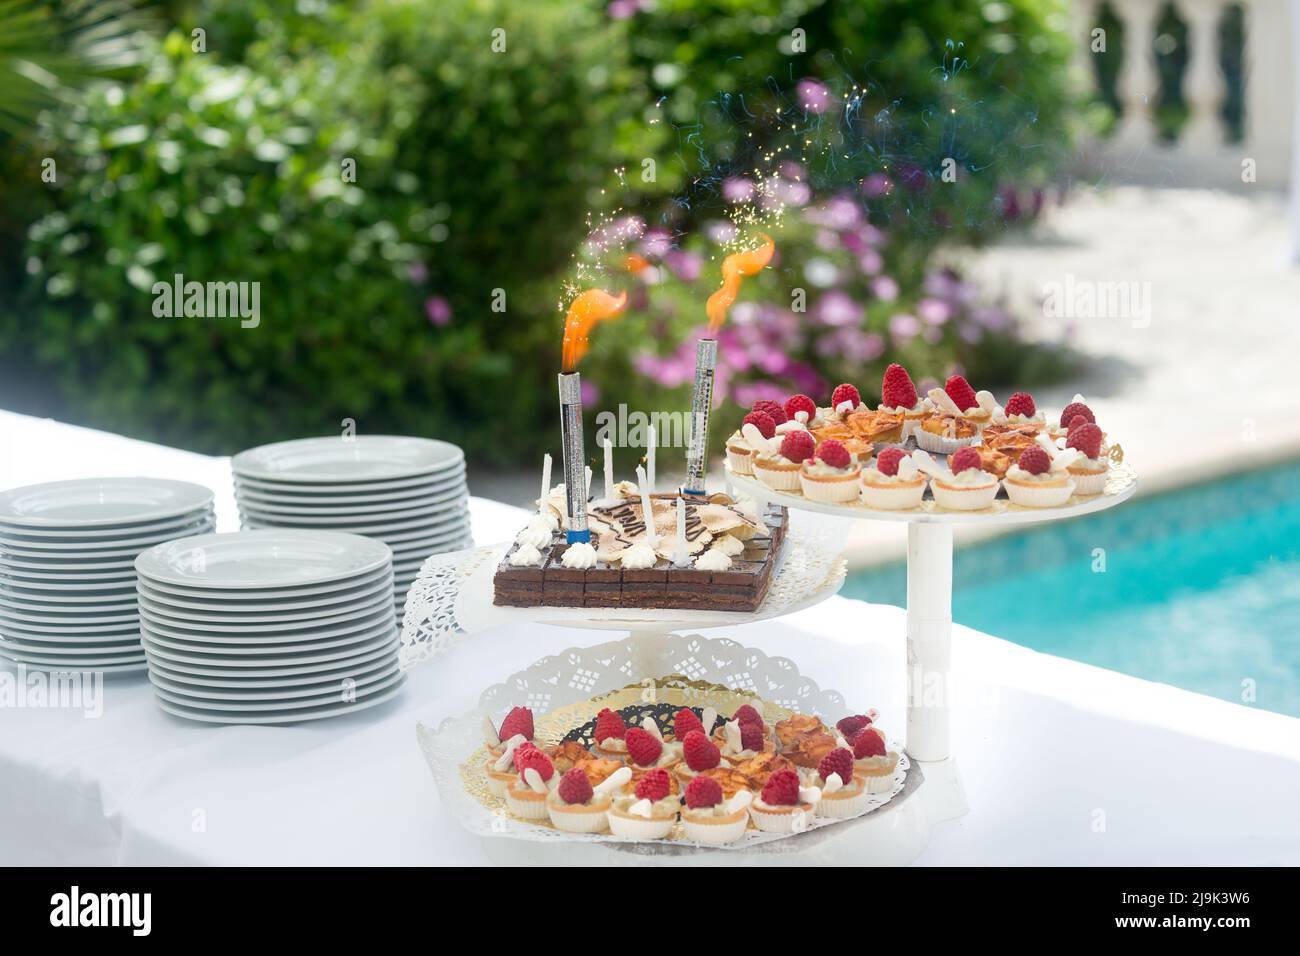 Dessertbuffet, kleine Schokolade- und Erdbeerkuchen, Geburtstagskerzen am Pool. Stockfoto